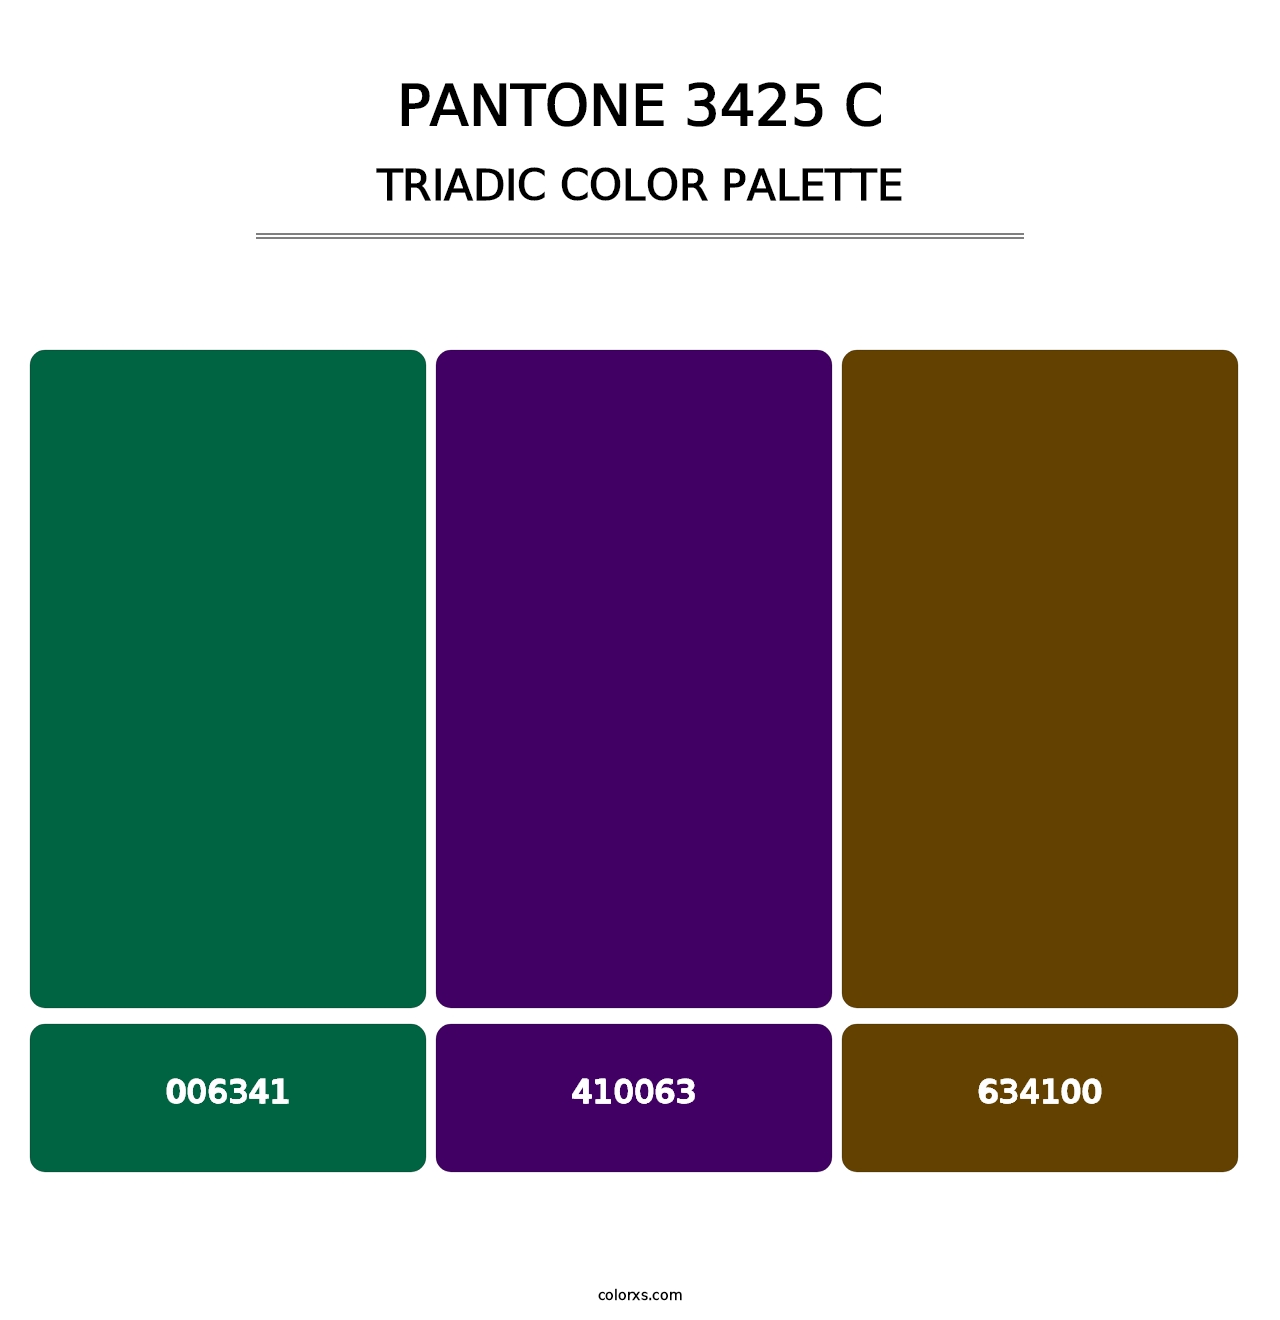 PANTONE 3425 C - Triadic Color Palette